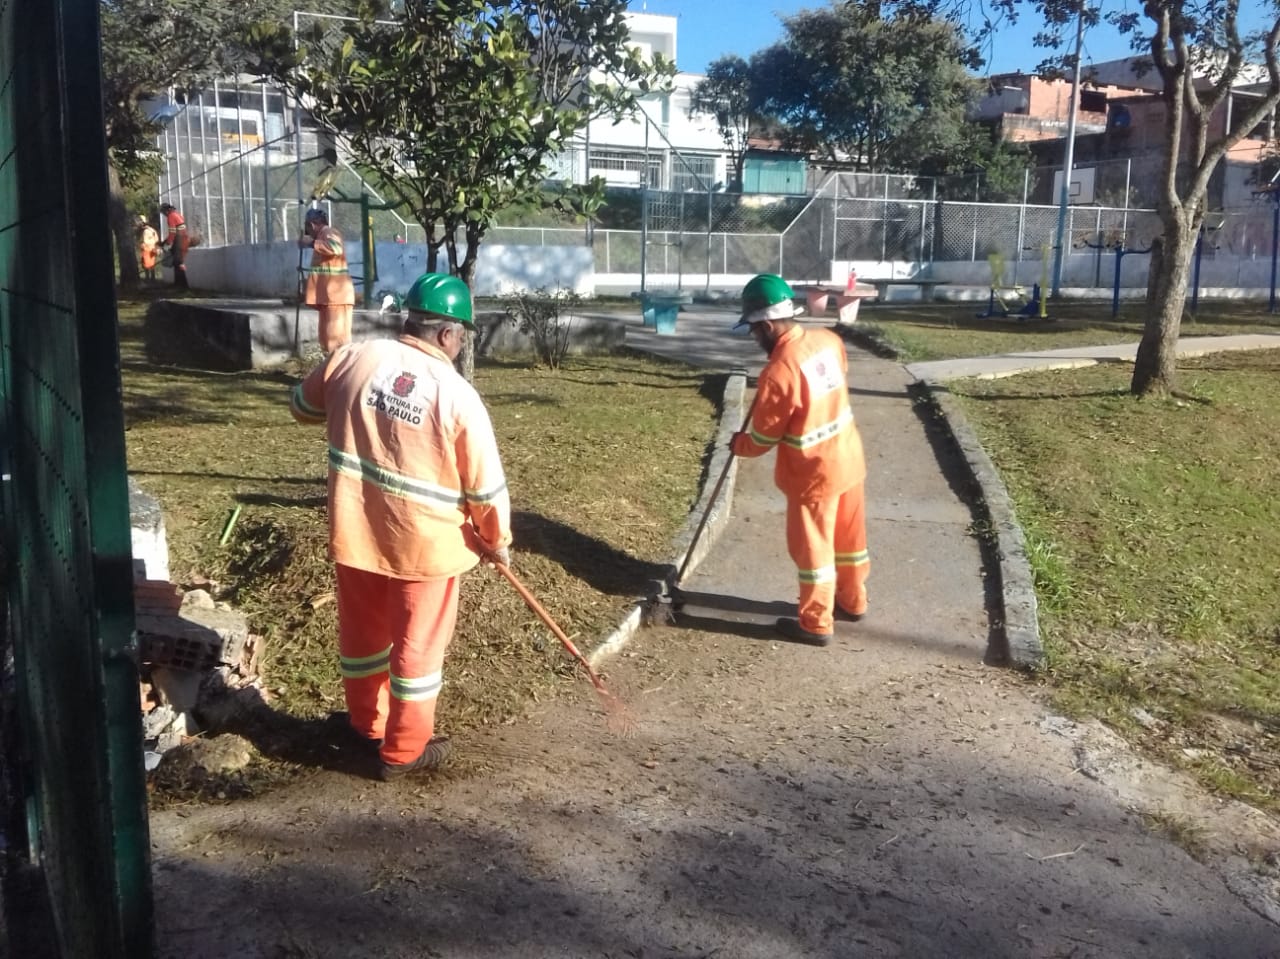 #PraCegoVer - Cinco trabalhadores da Subprefeitura cortam grama e limpam os passeios da praça. Há uma quadra fechada por alambrado ao fundo. E uma árvore à direita.